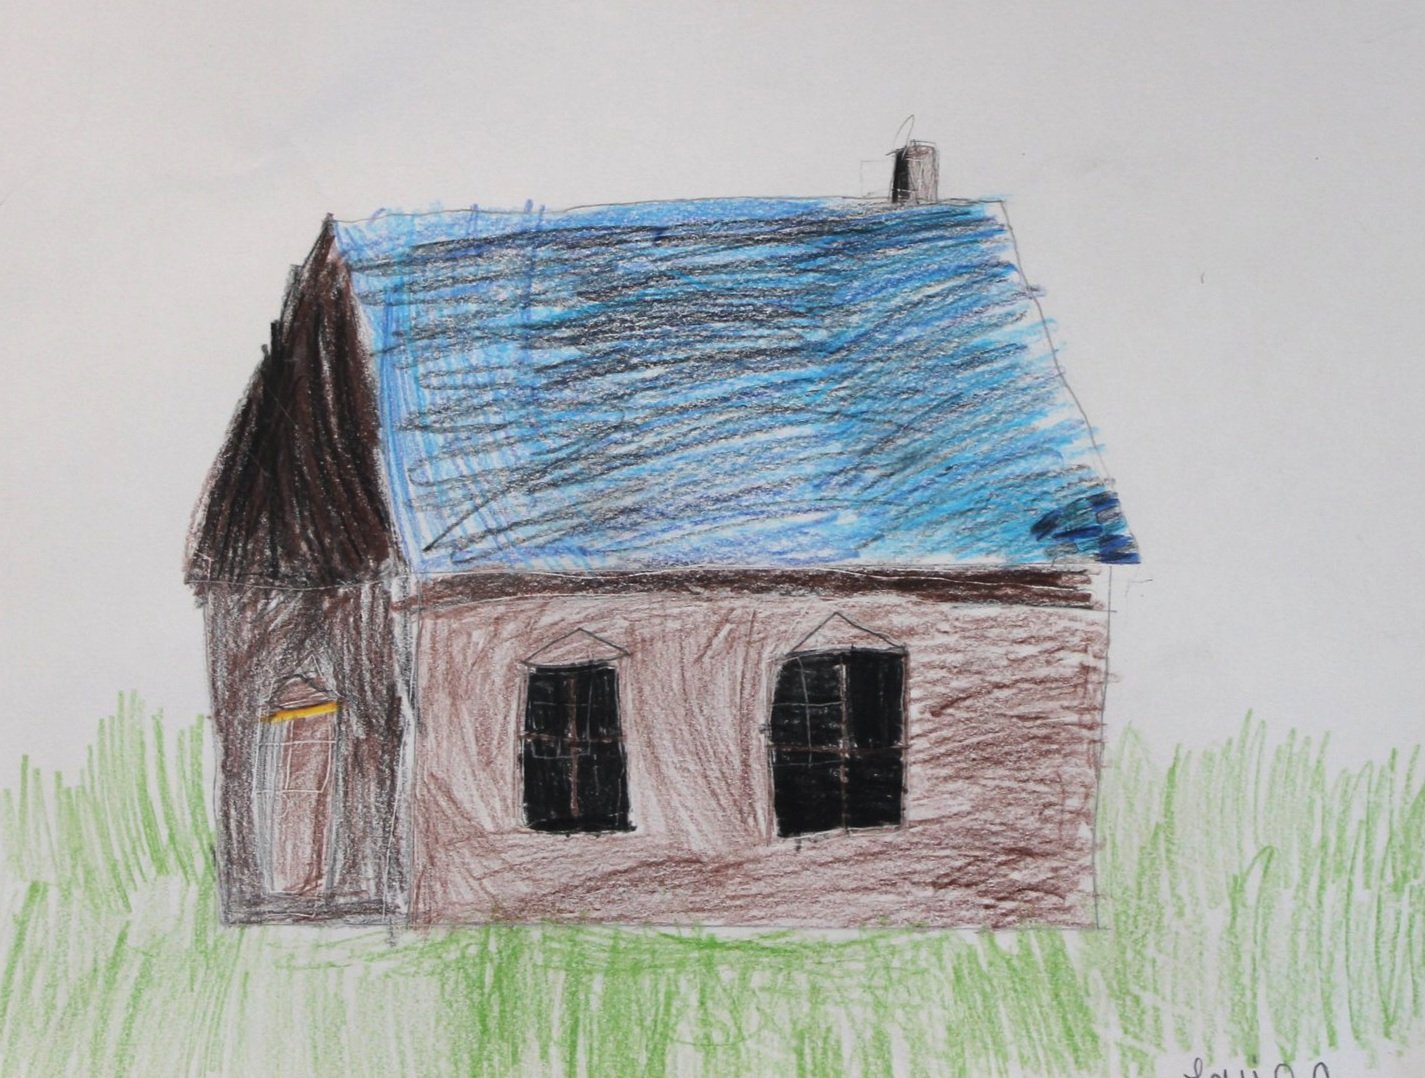 L.R., age 7, colored pencil